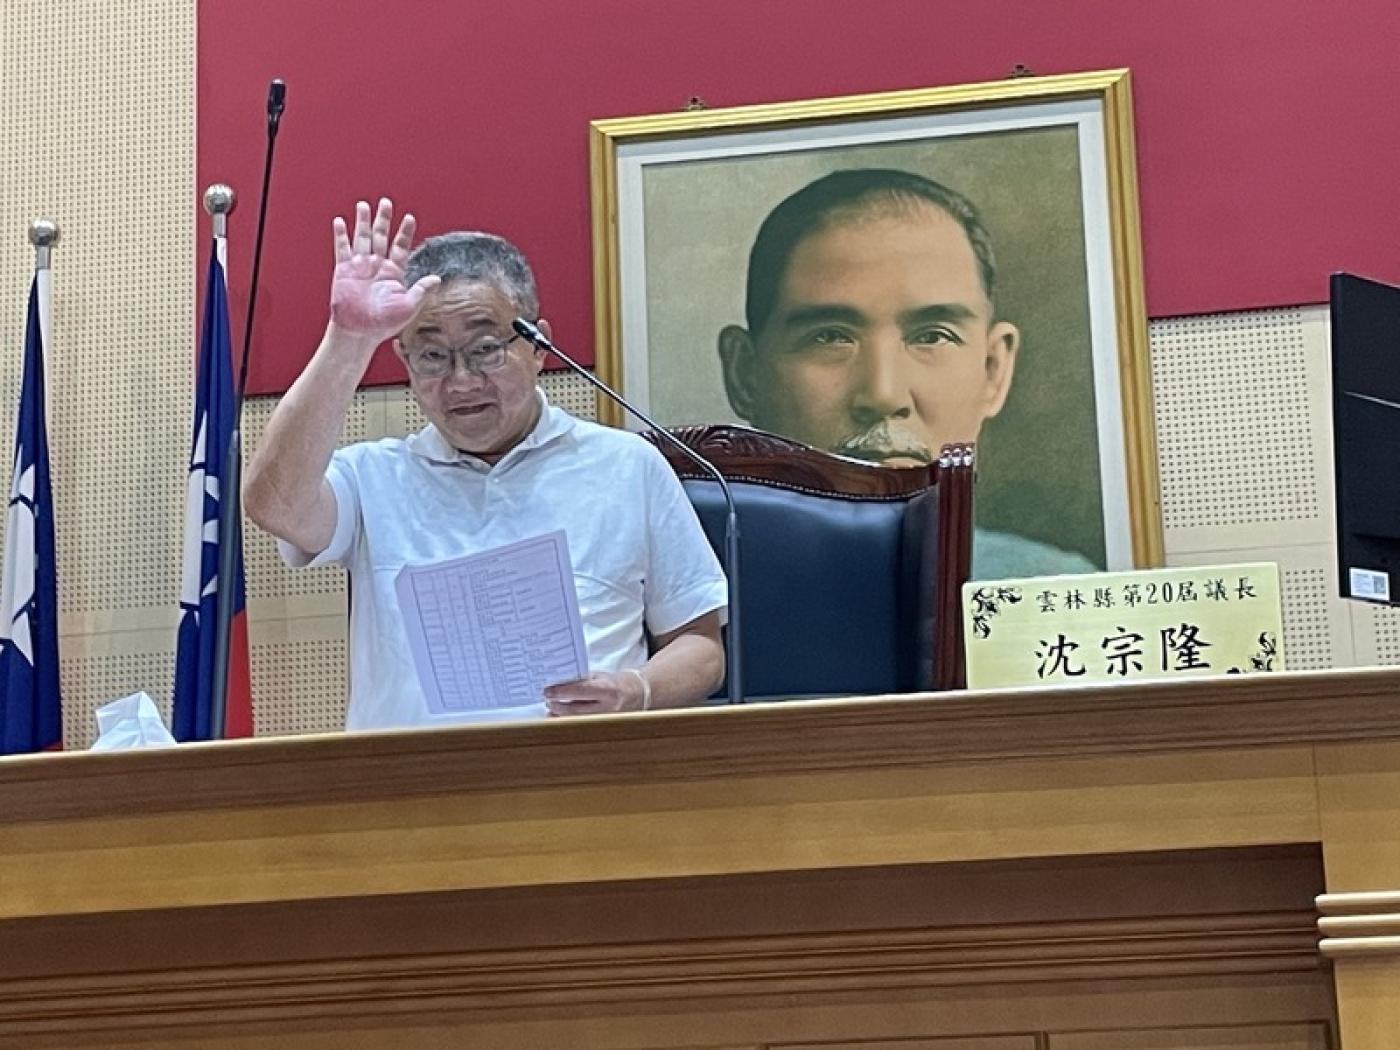 國民黨籍雲林縣議長沈宗隆13日主持議會時宣 布，即刻請辭議長一職。中央社